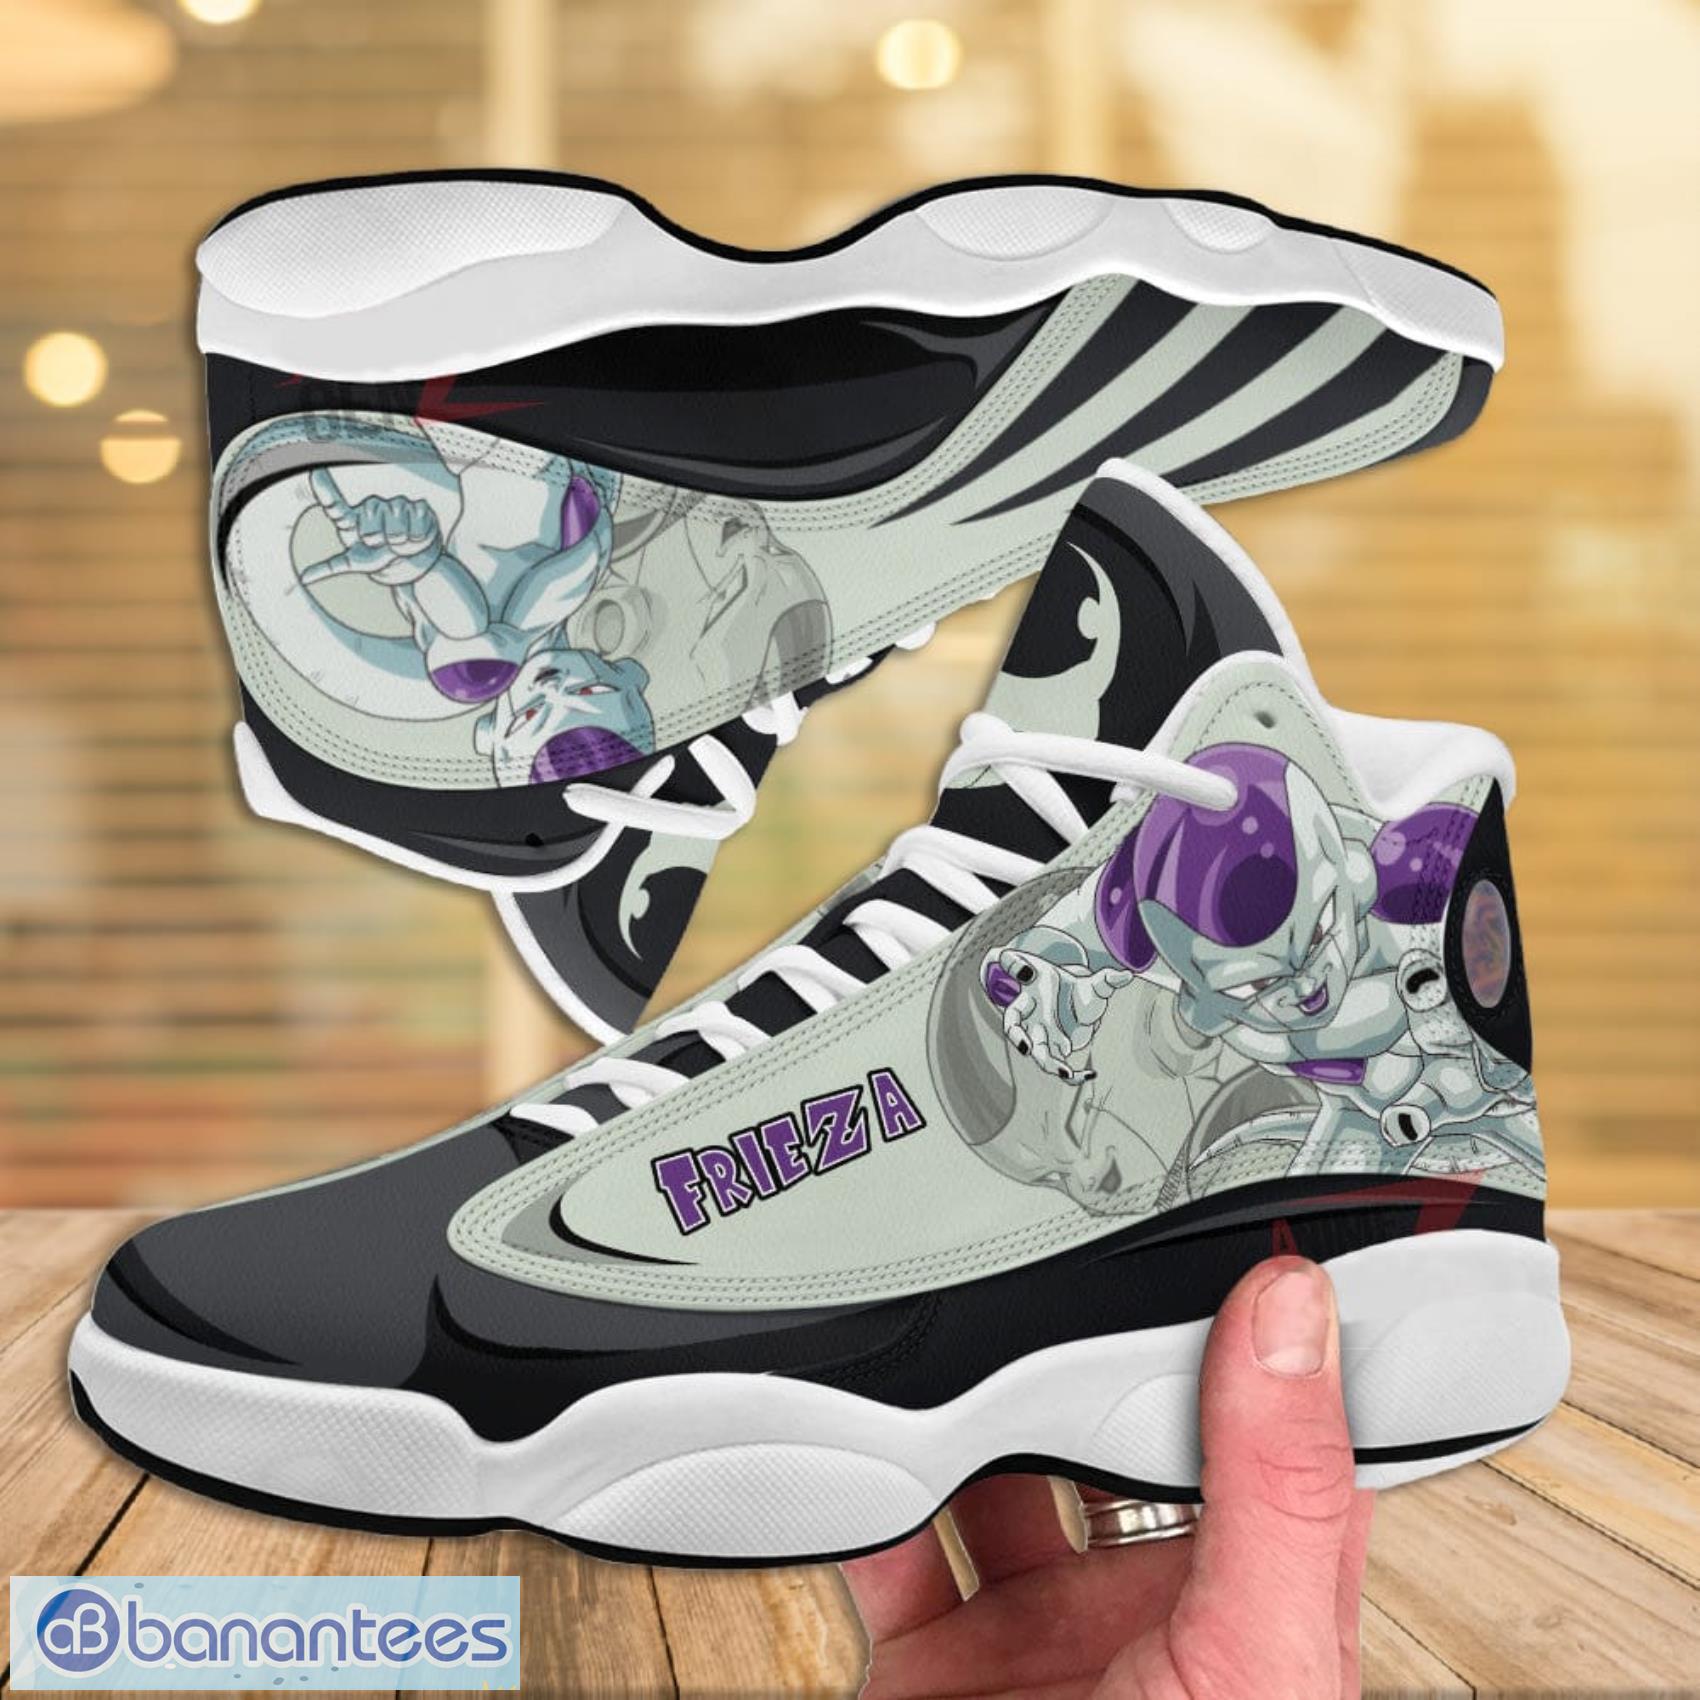 Dragon Ball Frieza AJ13 Sneakers Air Jordan 13 Shoes - Banantees